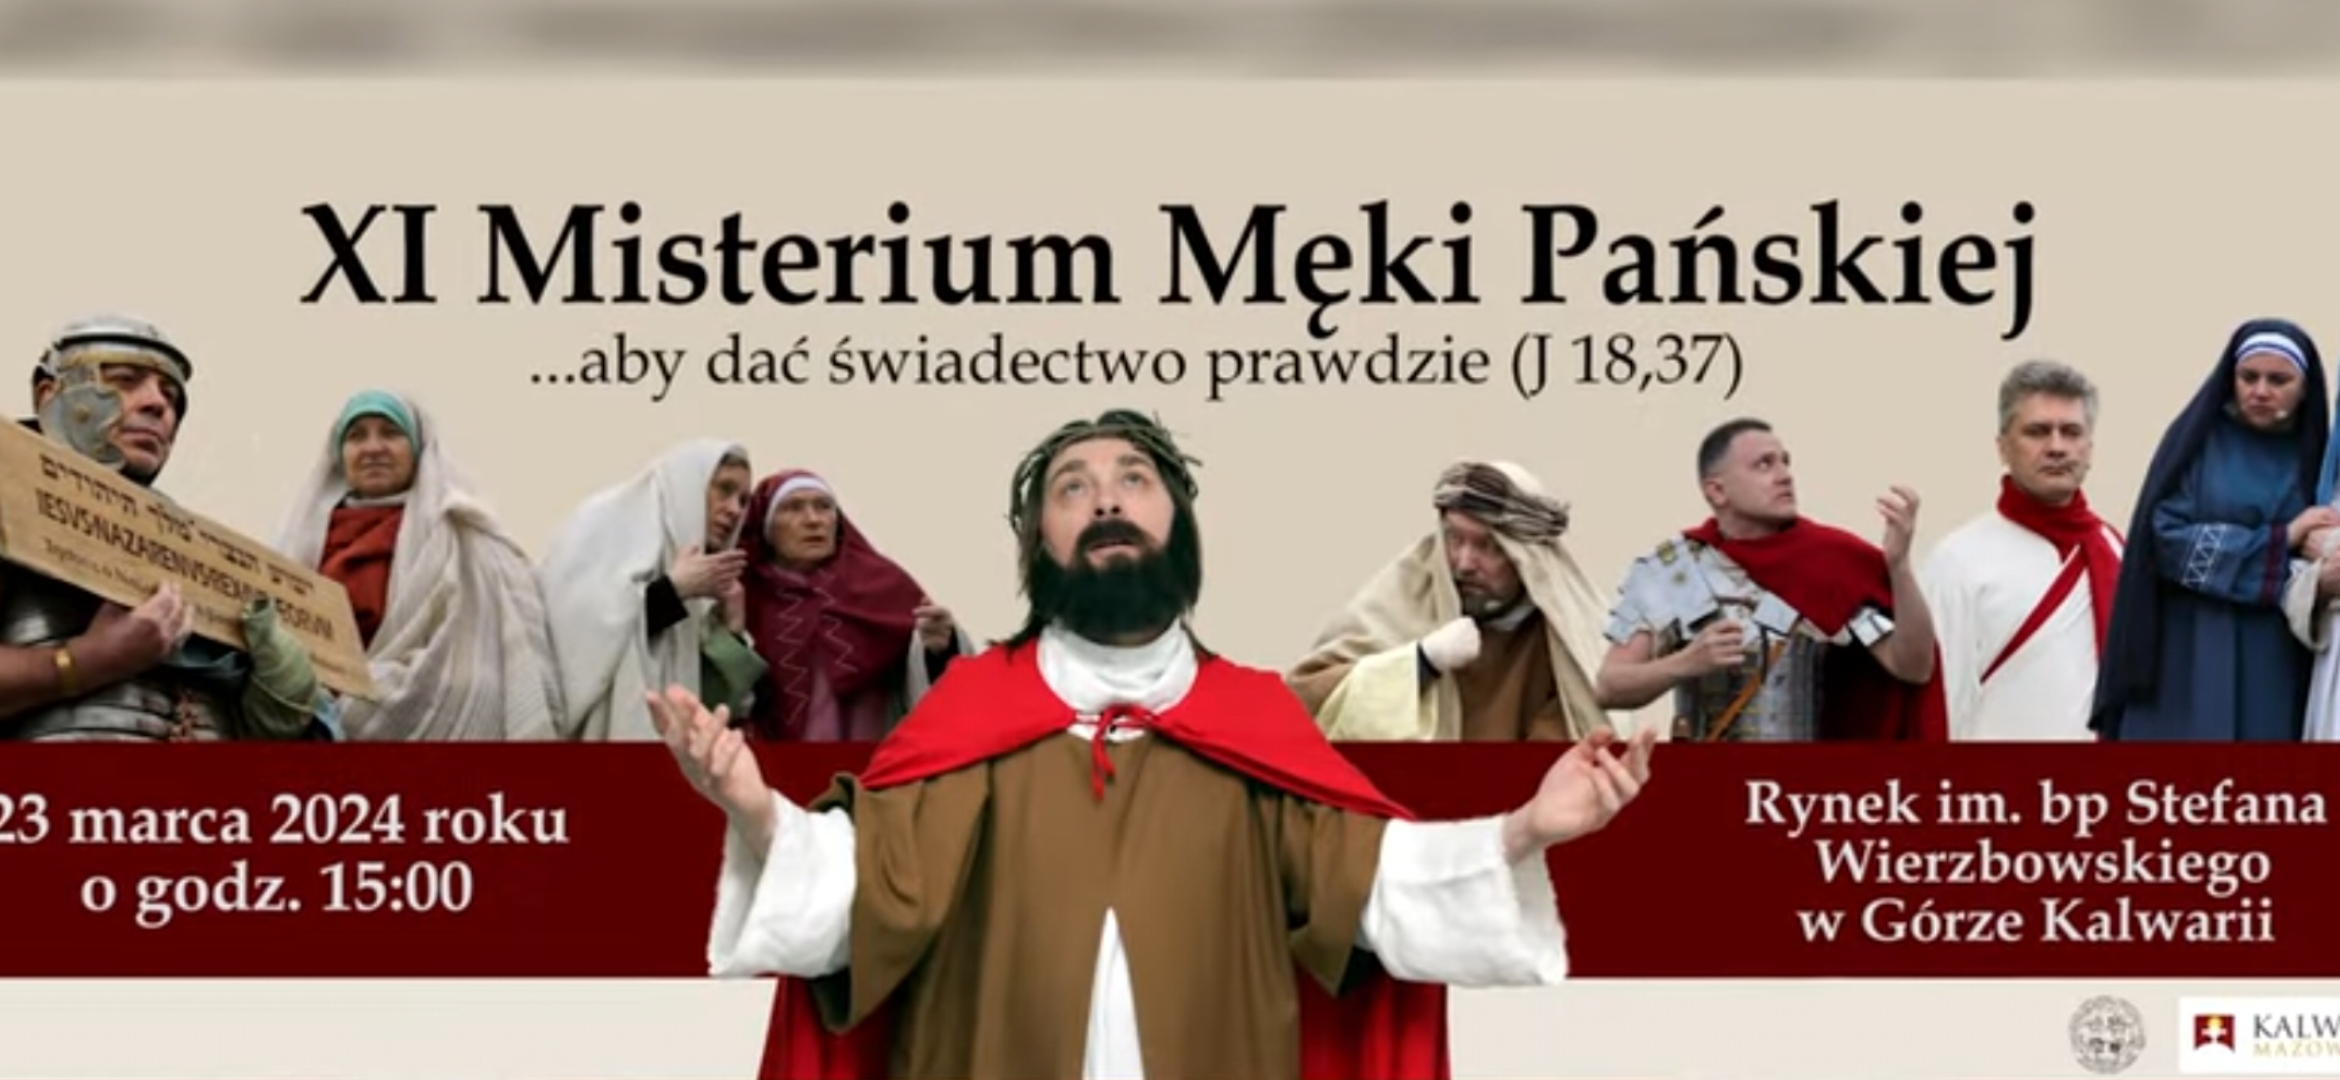 Łukasz Głodek - reżyser misteriów pokutnych - wyjaśnia czym Góra Kalwaria jest dla katolików, a czym dla Żydów?